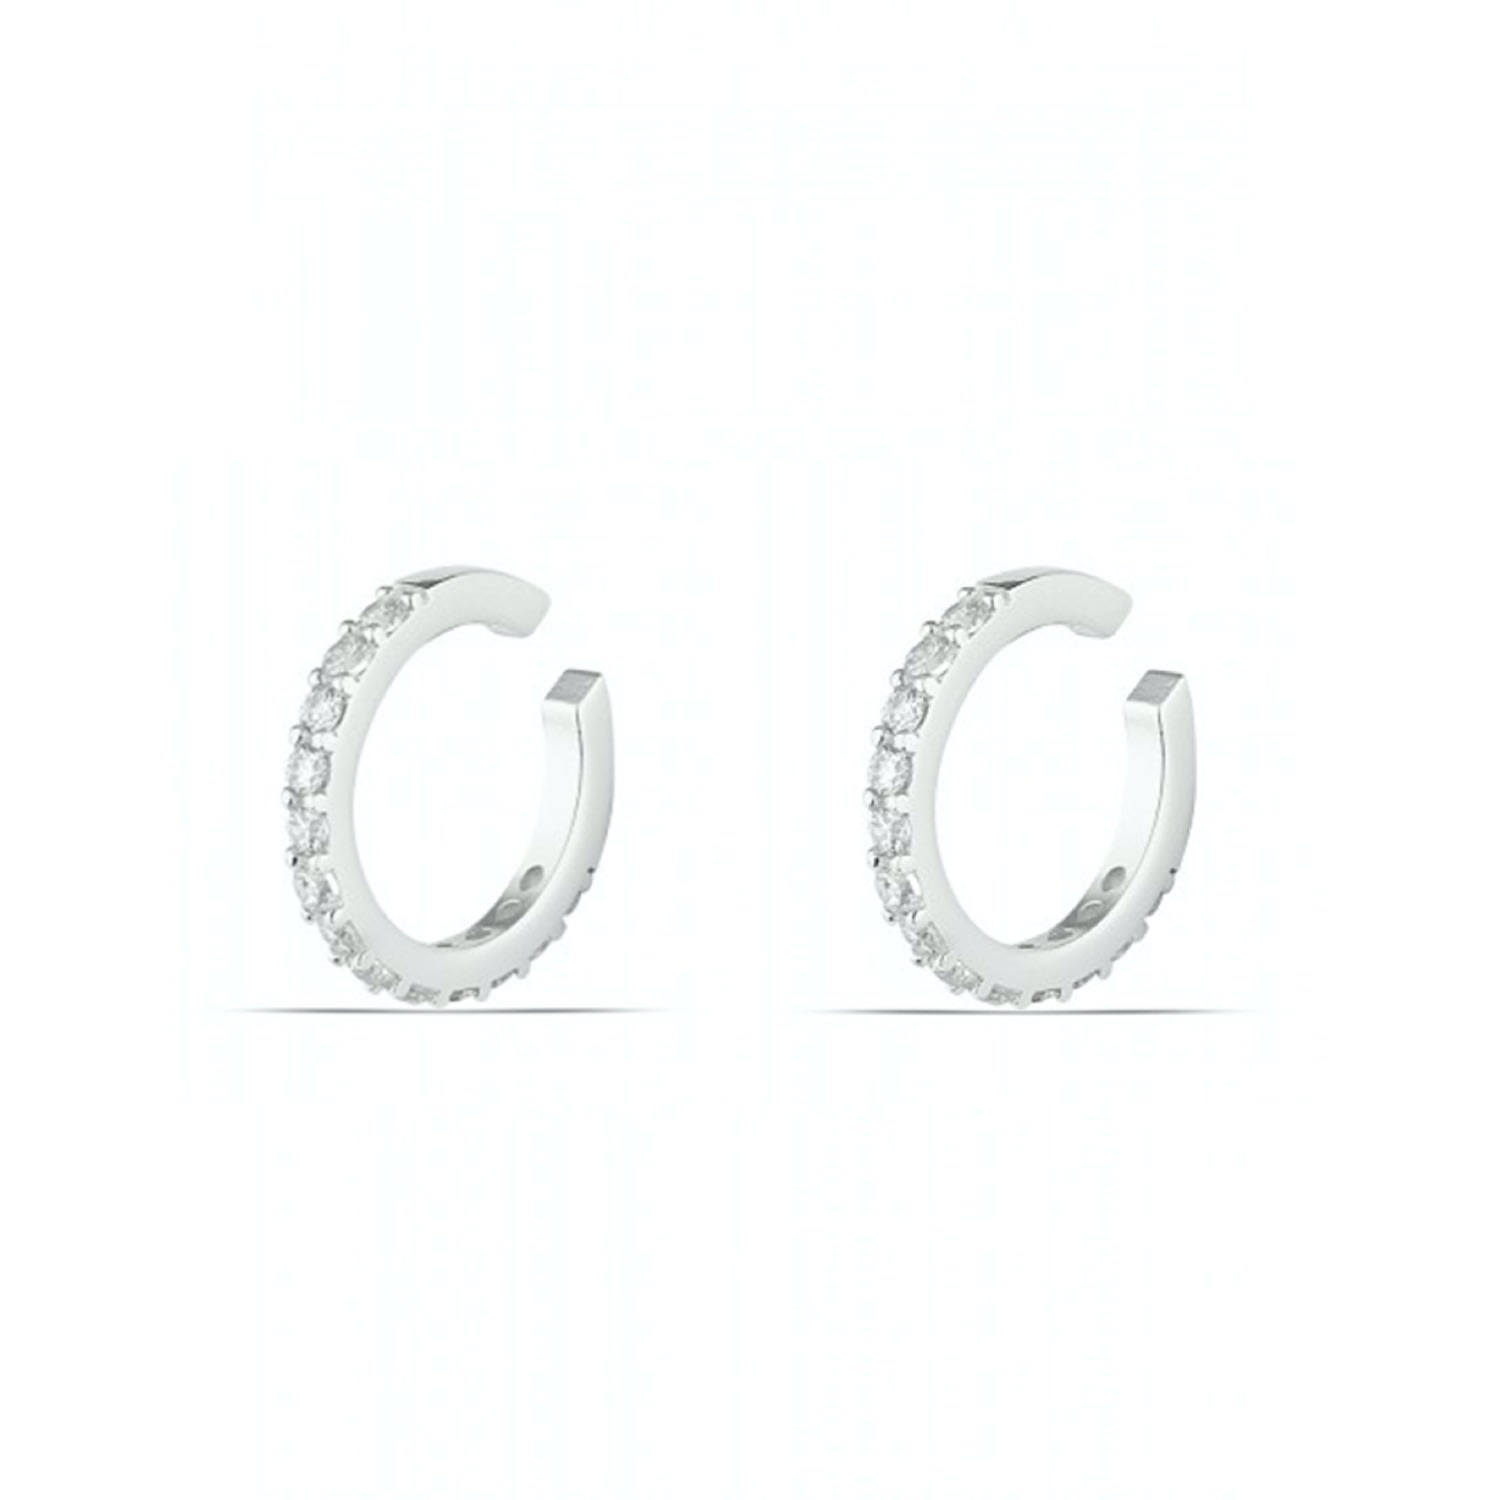 Spero London Women's Cubic Zirconia Sterling Silver Ear Cuff No Piercing - Silver - Pair In White